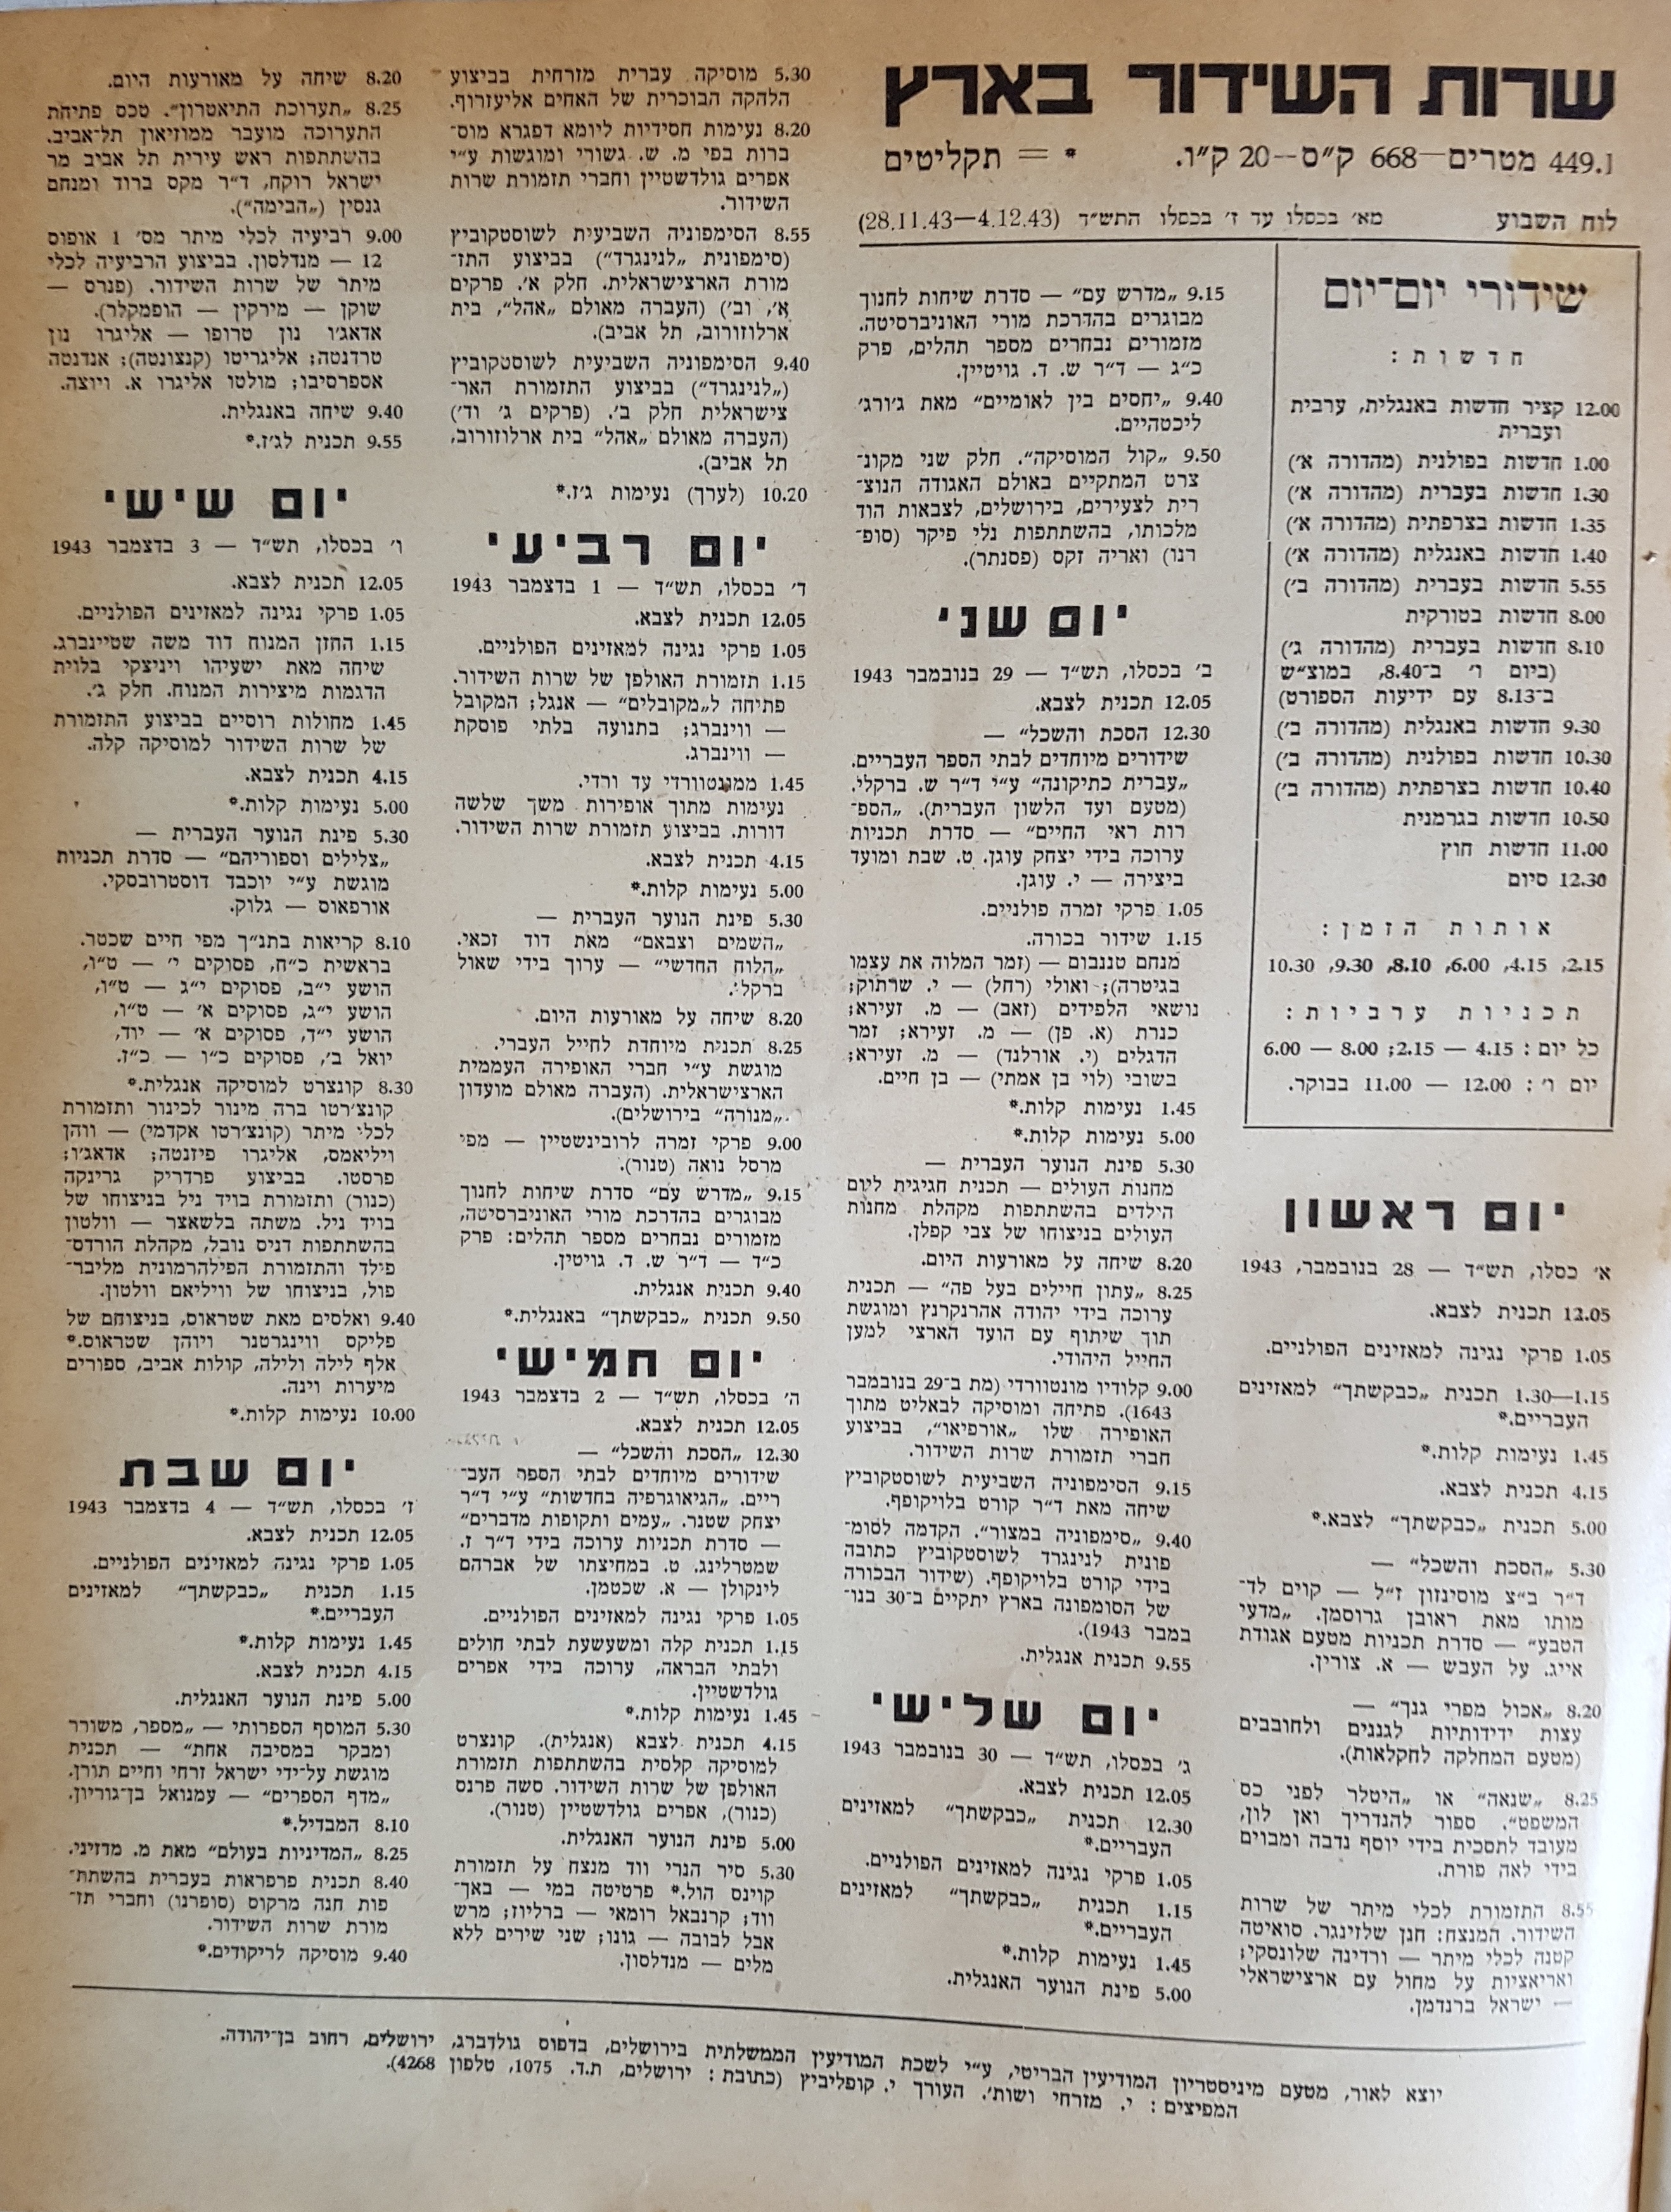 Radio Schedule: November 28, 1943 -  December 4, 1943